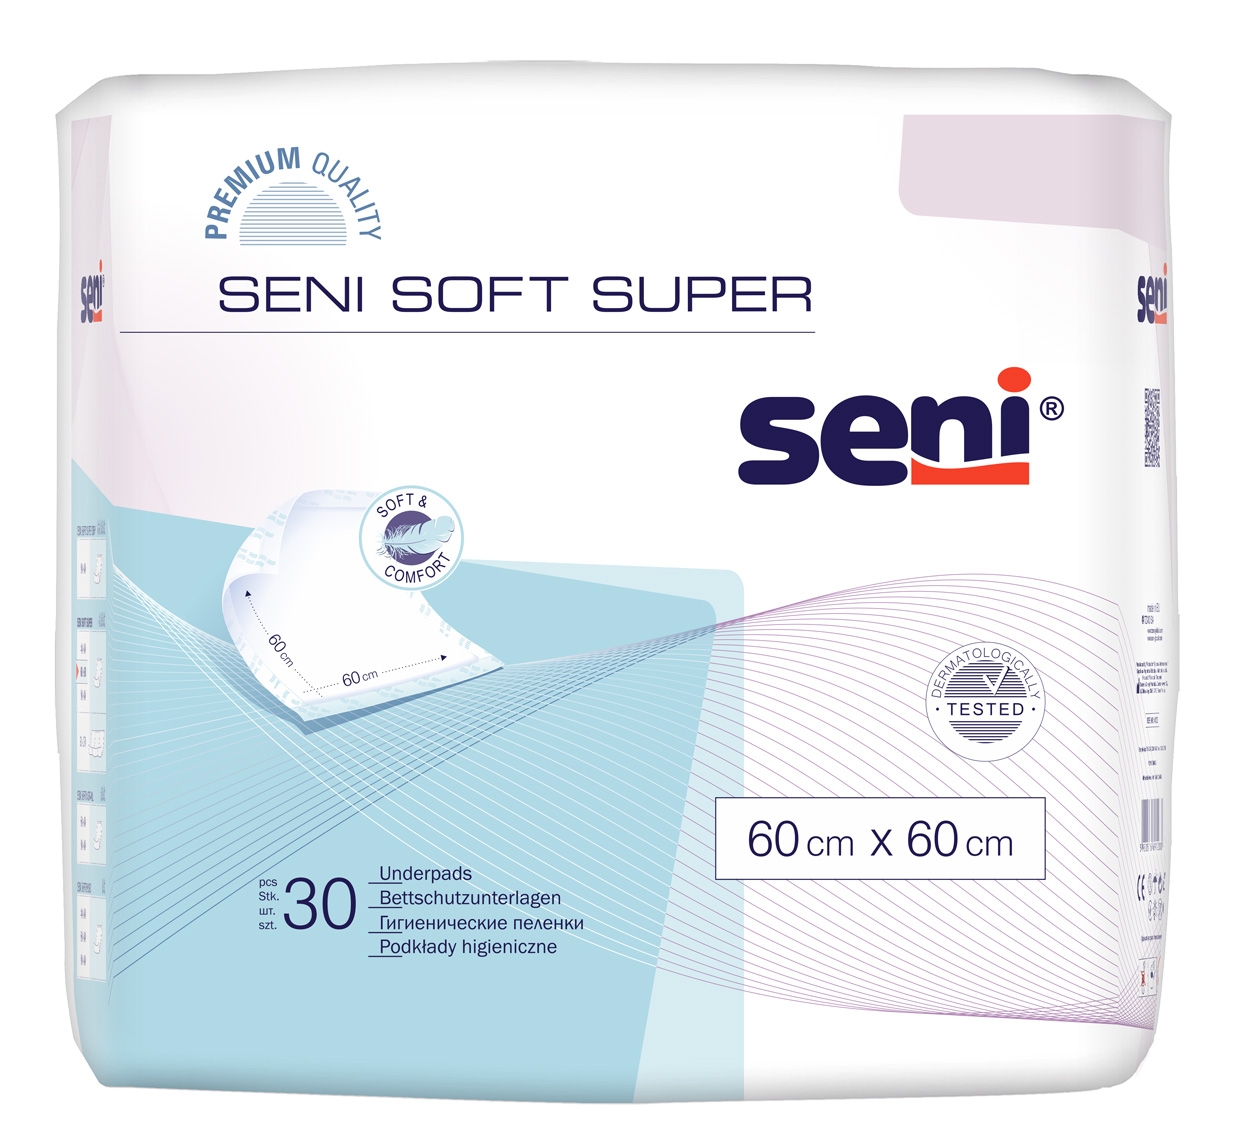 SENI Soft SUPER - Krankenunterlagen 60 x 60 cm Flocken - 120 Stück